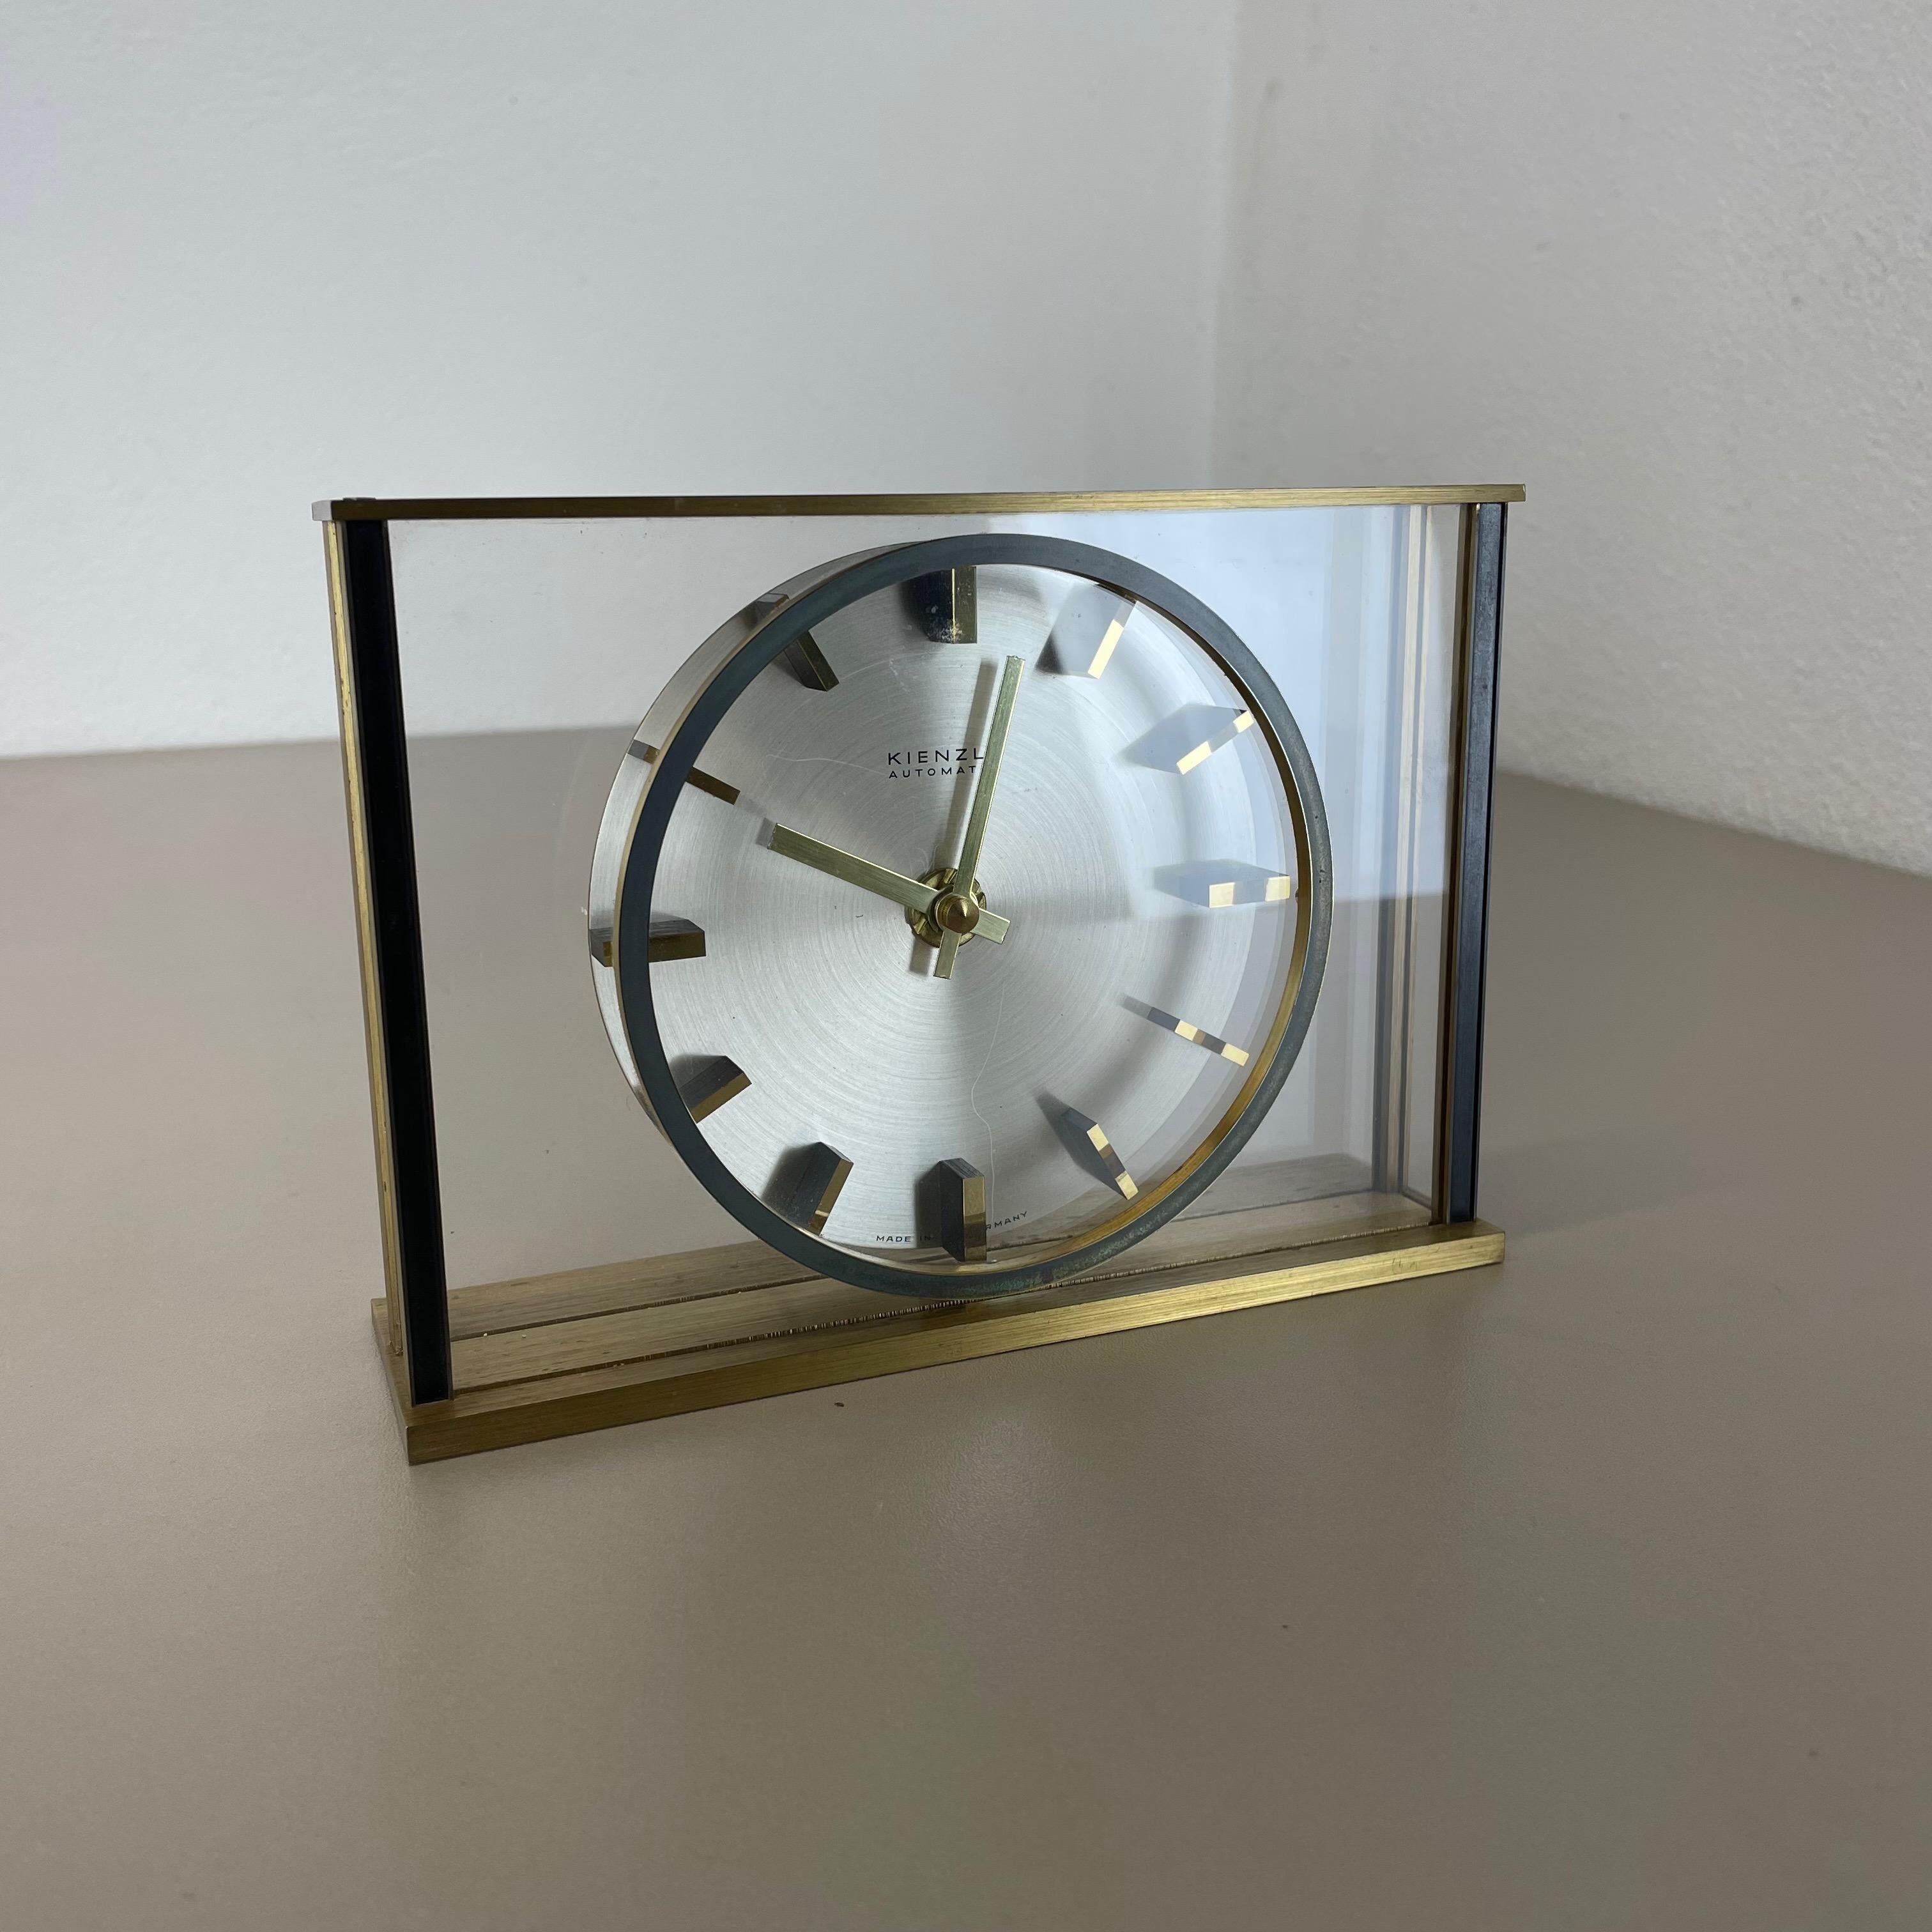 Article :

Horloge de table



Origine :

Allemagne


Producteur :

Kienzle, Allemagne


Âge :

1970s



Cette horloge de table vintage originale a été produite dans les années 1970 par le fabricant d'horloges haut de gamme